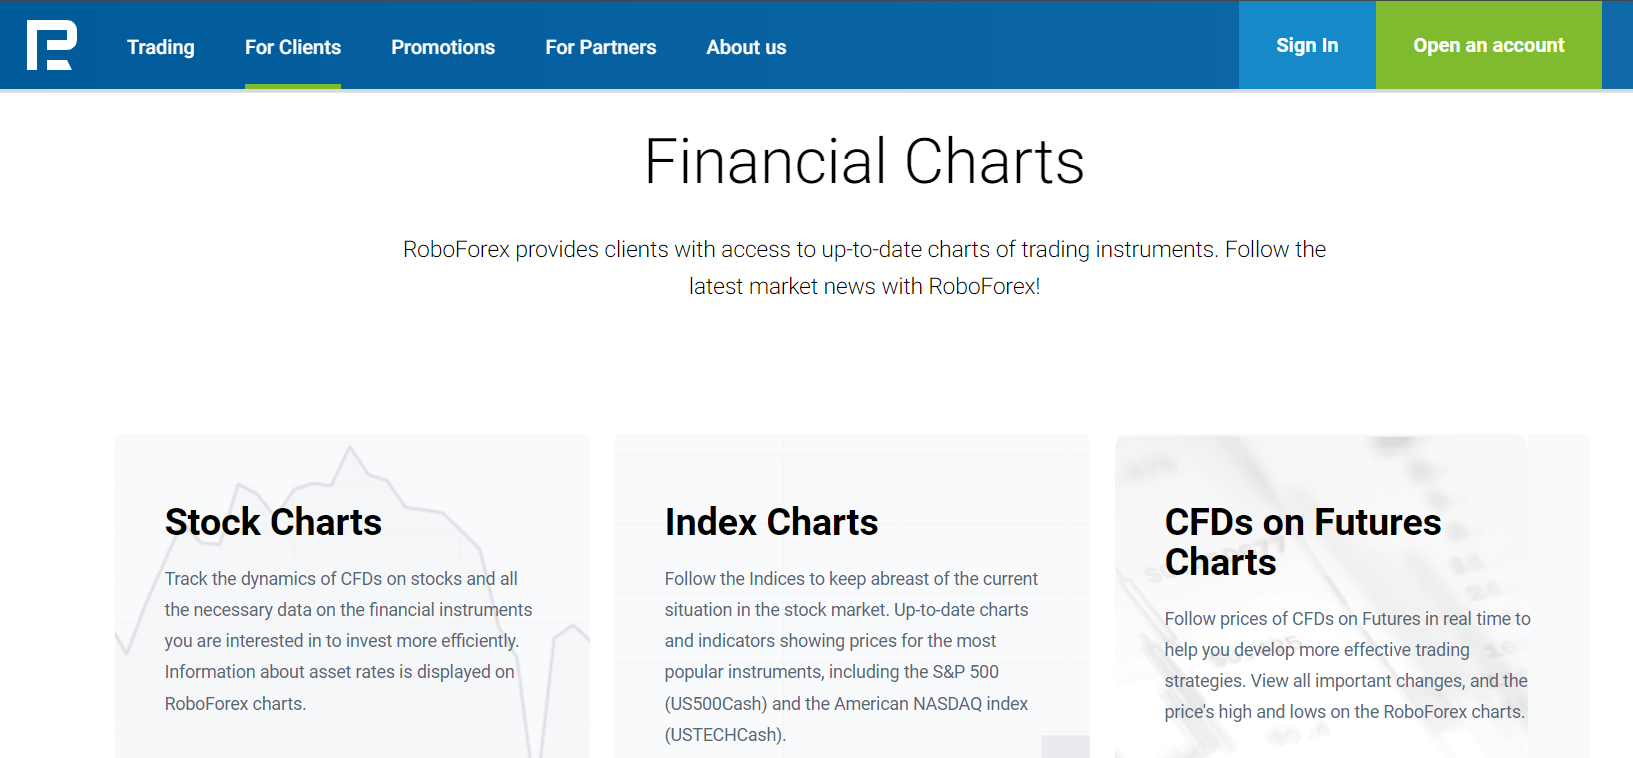 उपयोगी उपकरण - वित्तीय चार्ट
        